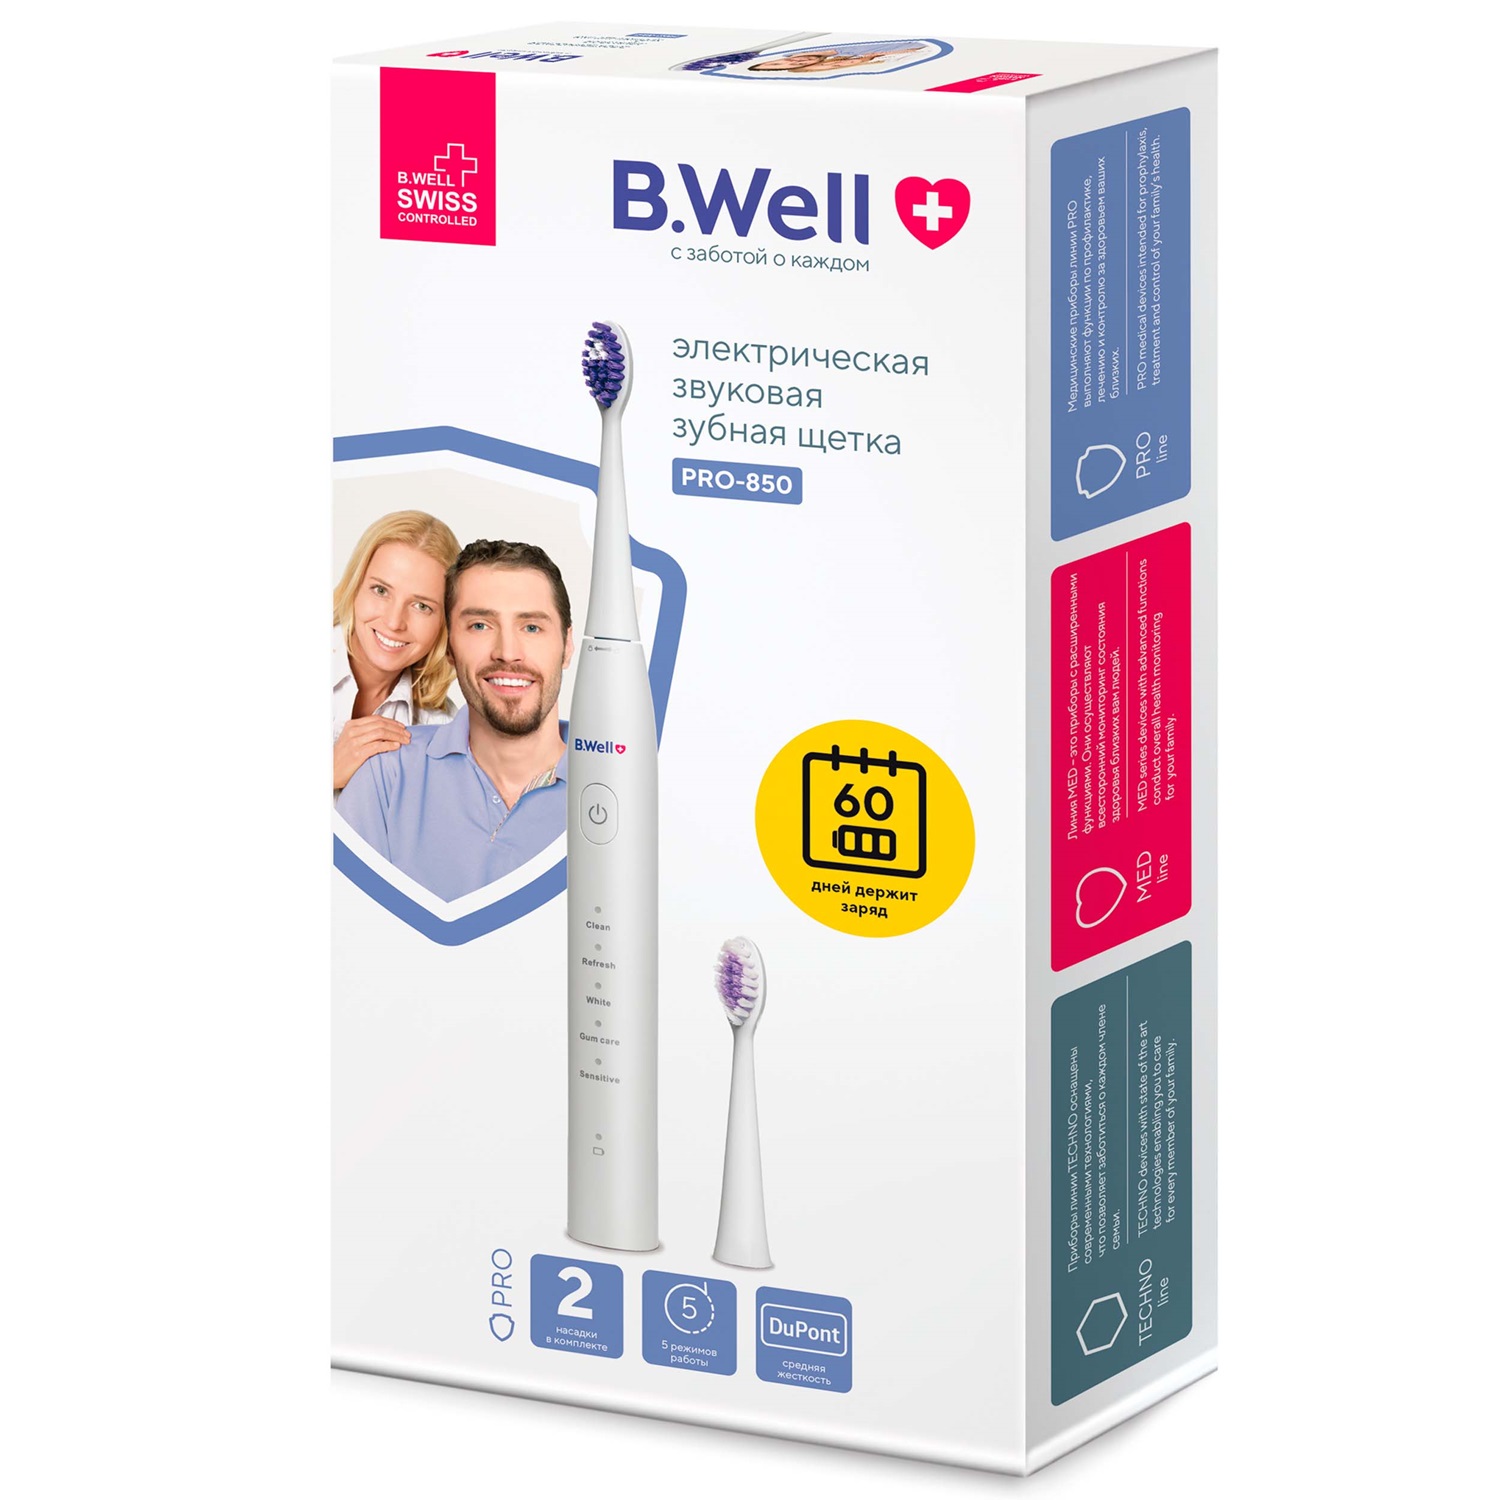 B.Well Электрическая звуковая зубная щетка PRO-850, белая (B.Well, PRO) 40 шт коробка щётки для чистки зубов